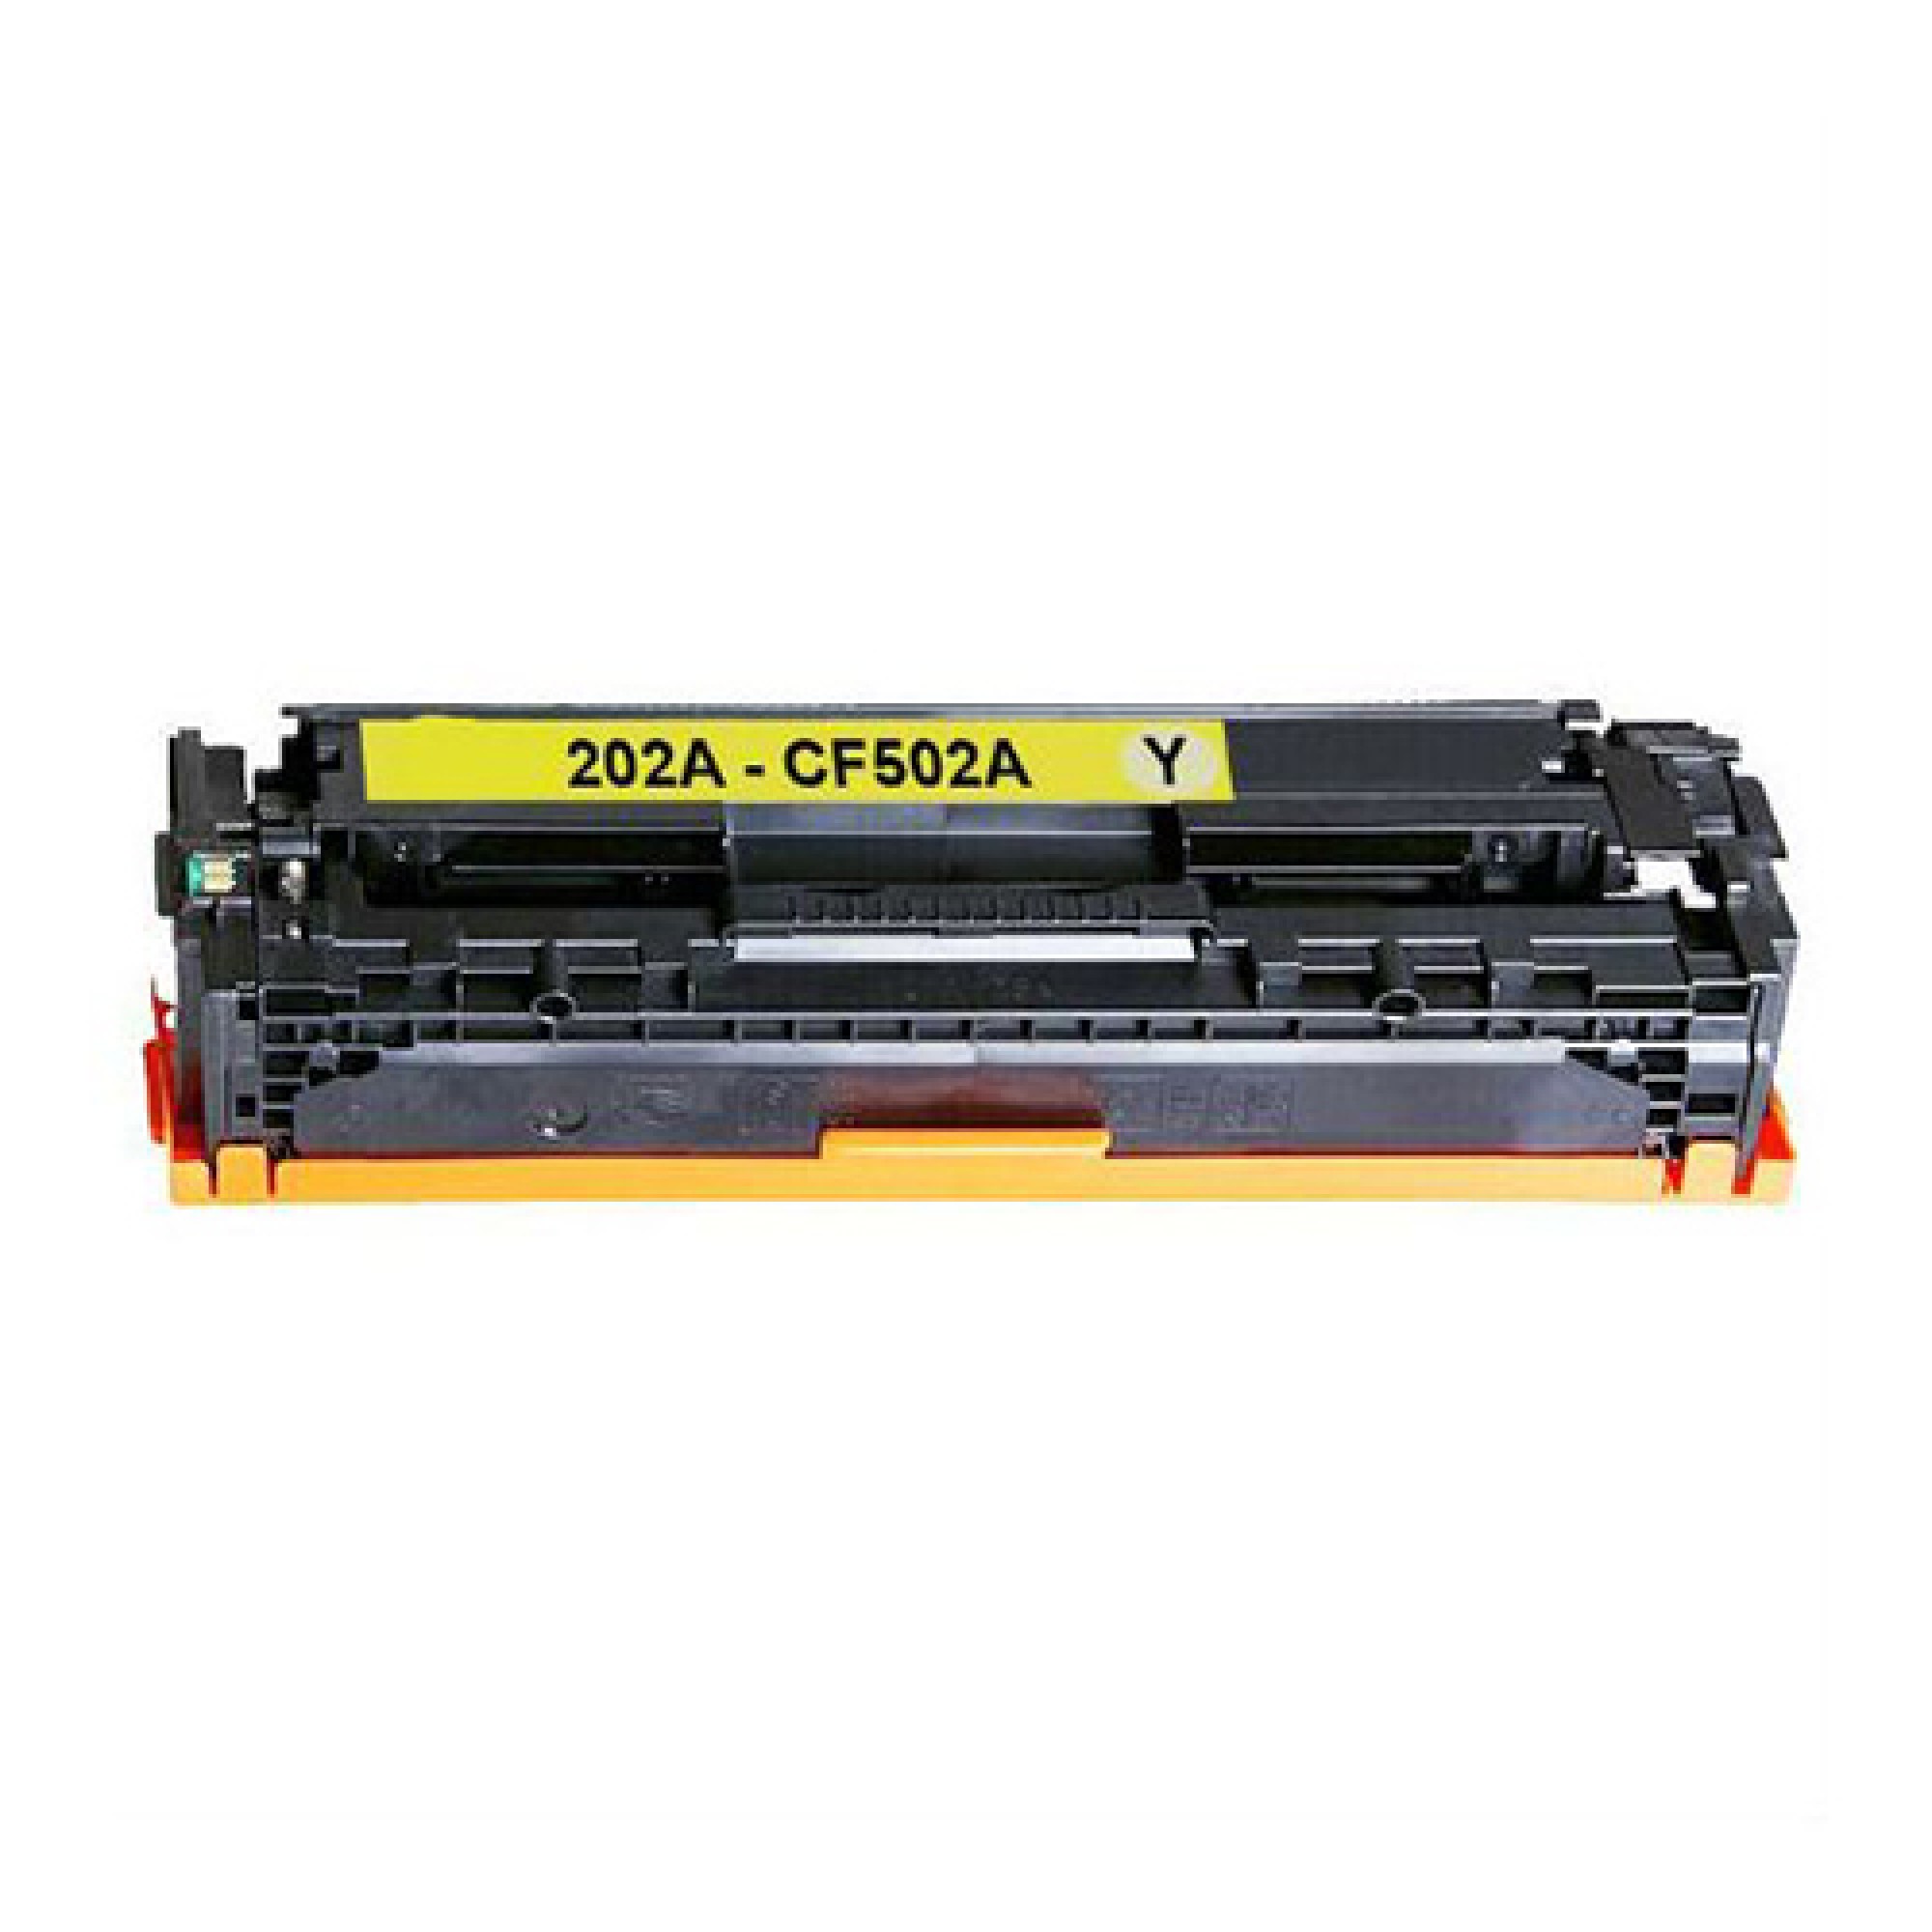 HP 202a HP202A CF503a Compatible Yellow Toner